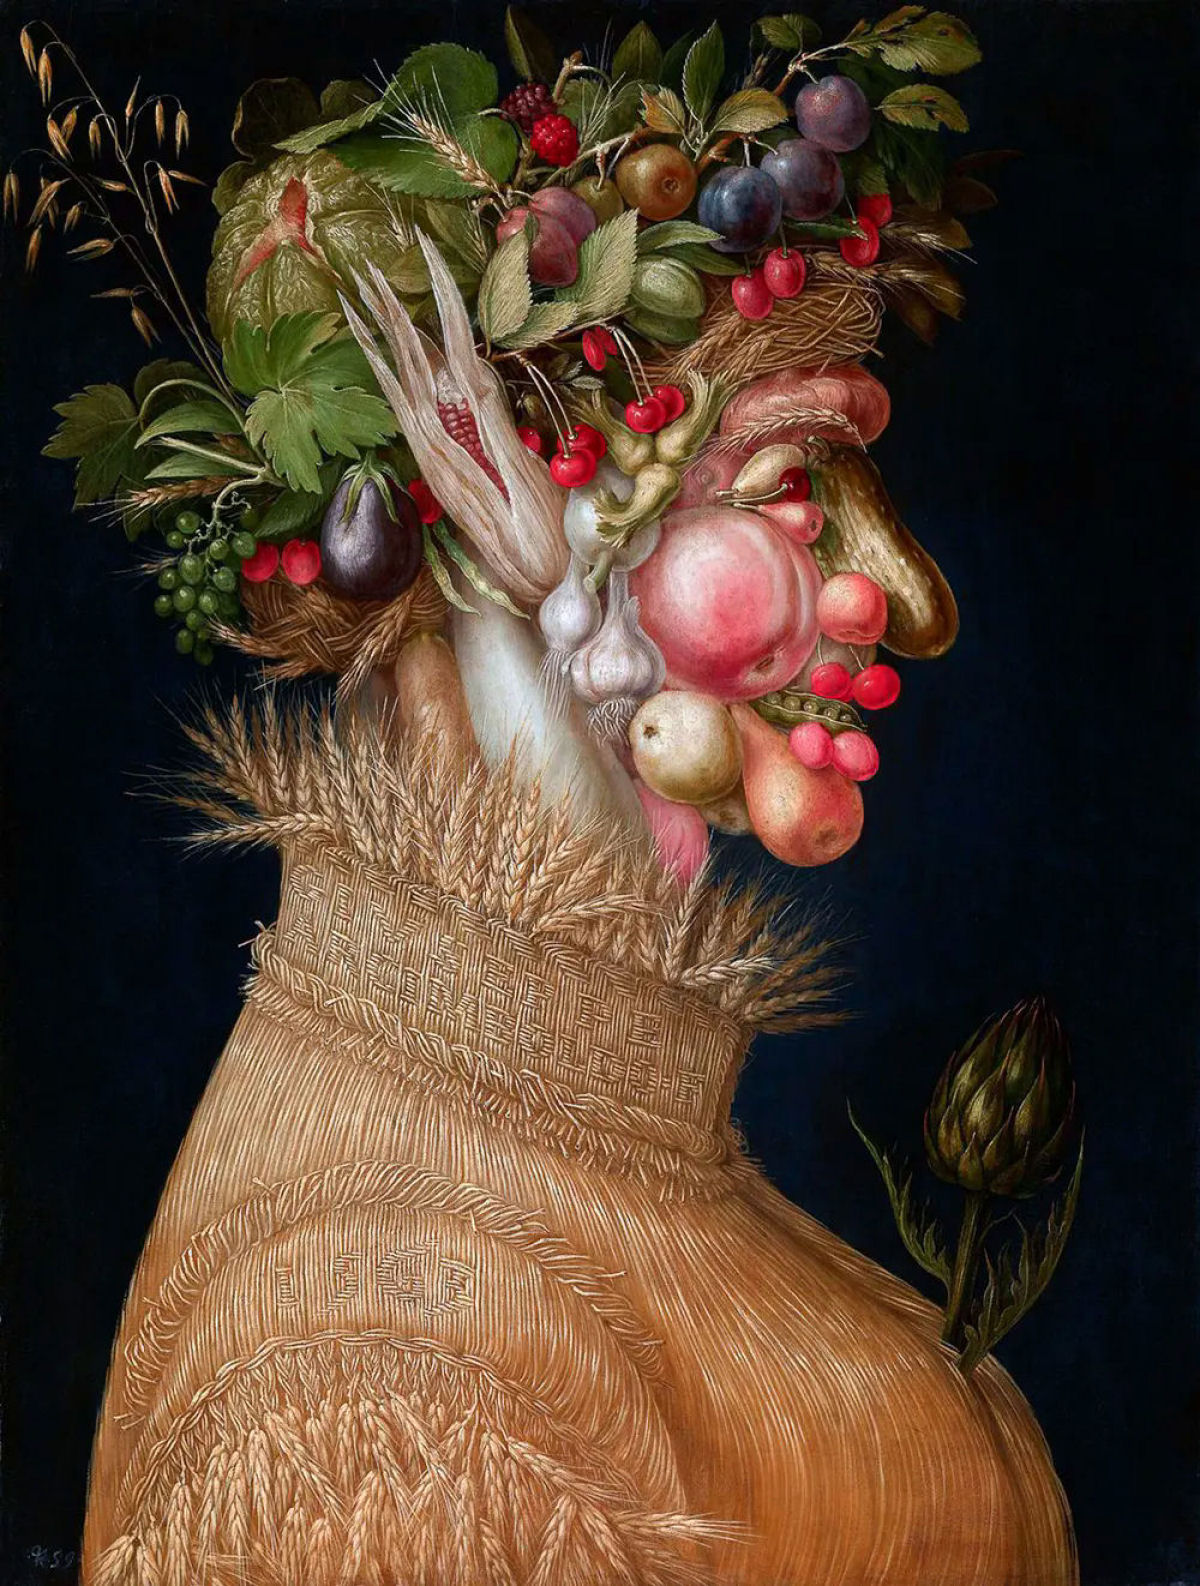 Os fascinantes retratos de Giuseppe Arcimboldo compostos por alimentos e objetos 03